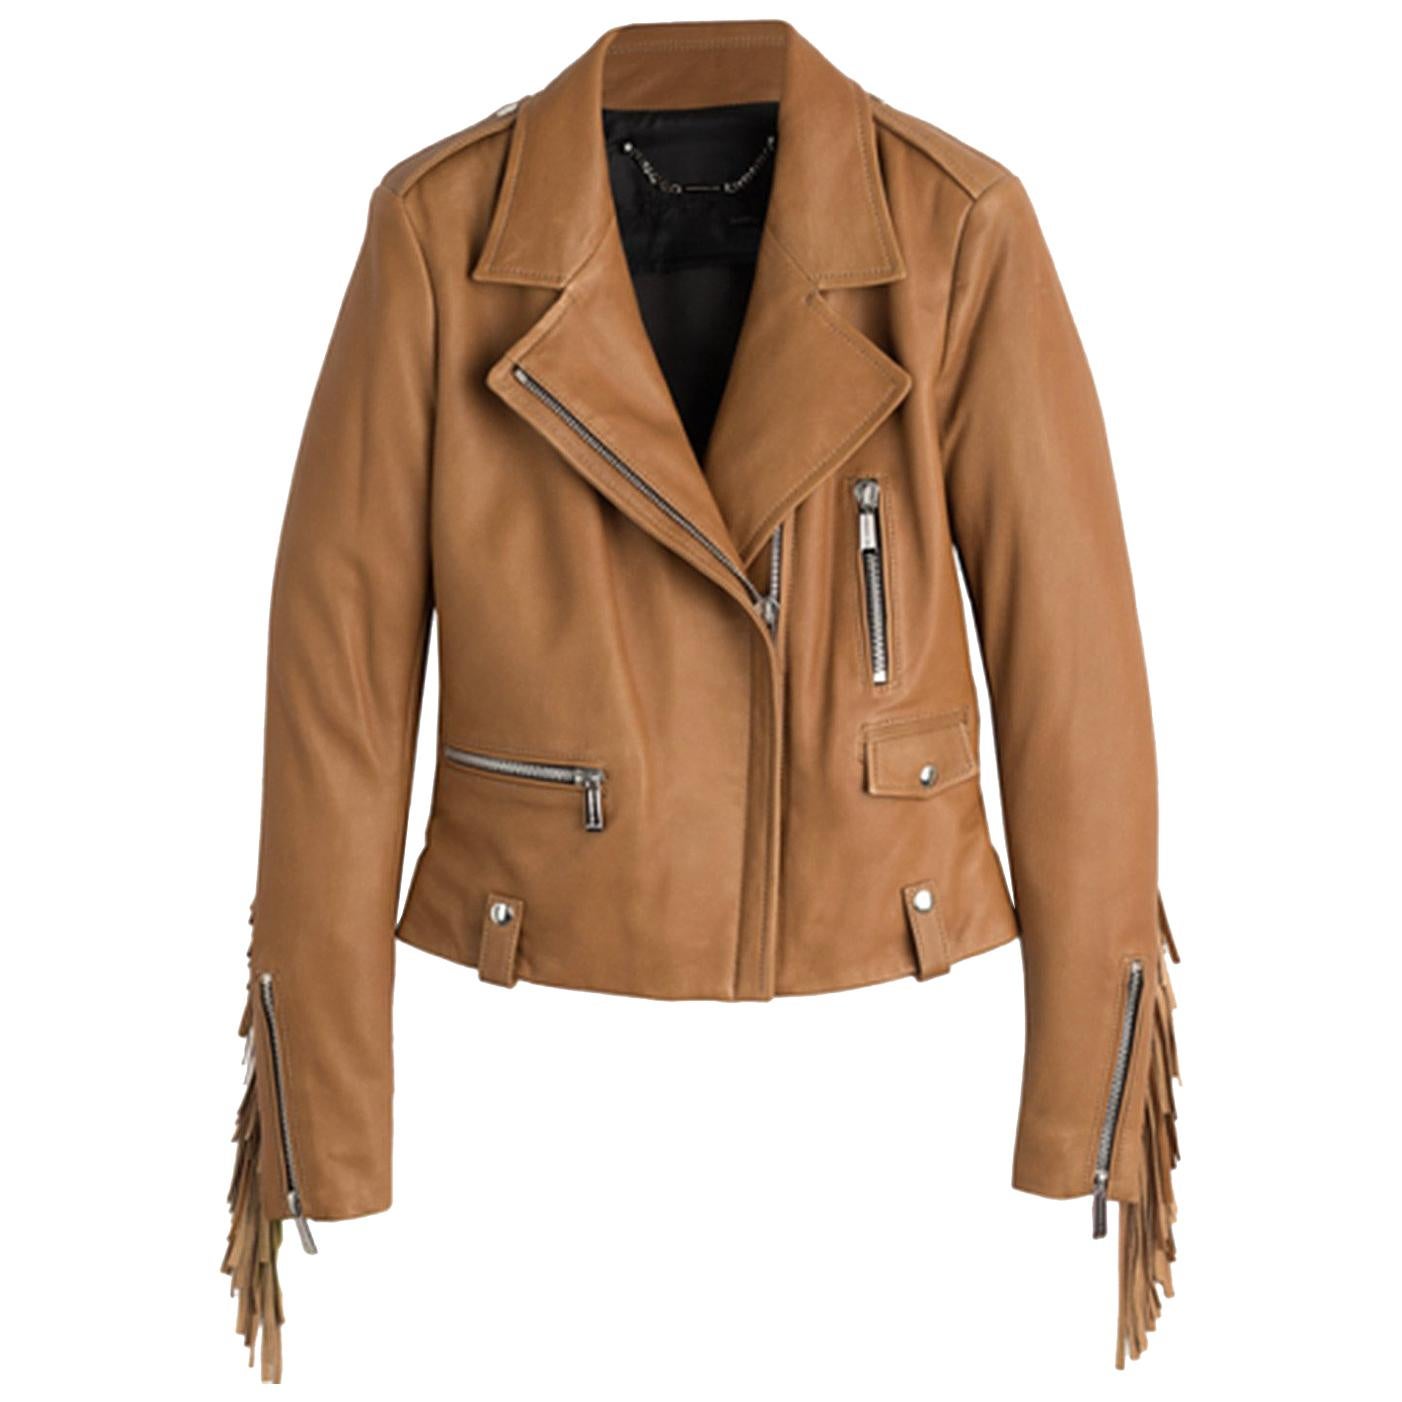 Barbara Bui Fringe Leather Jacket 